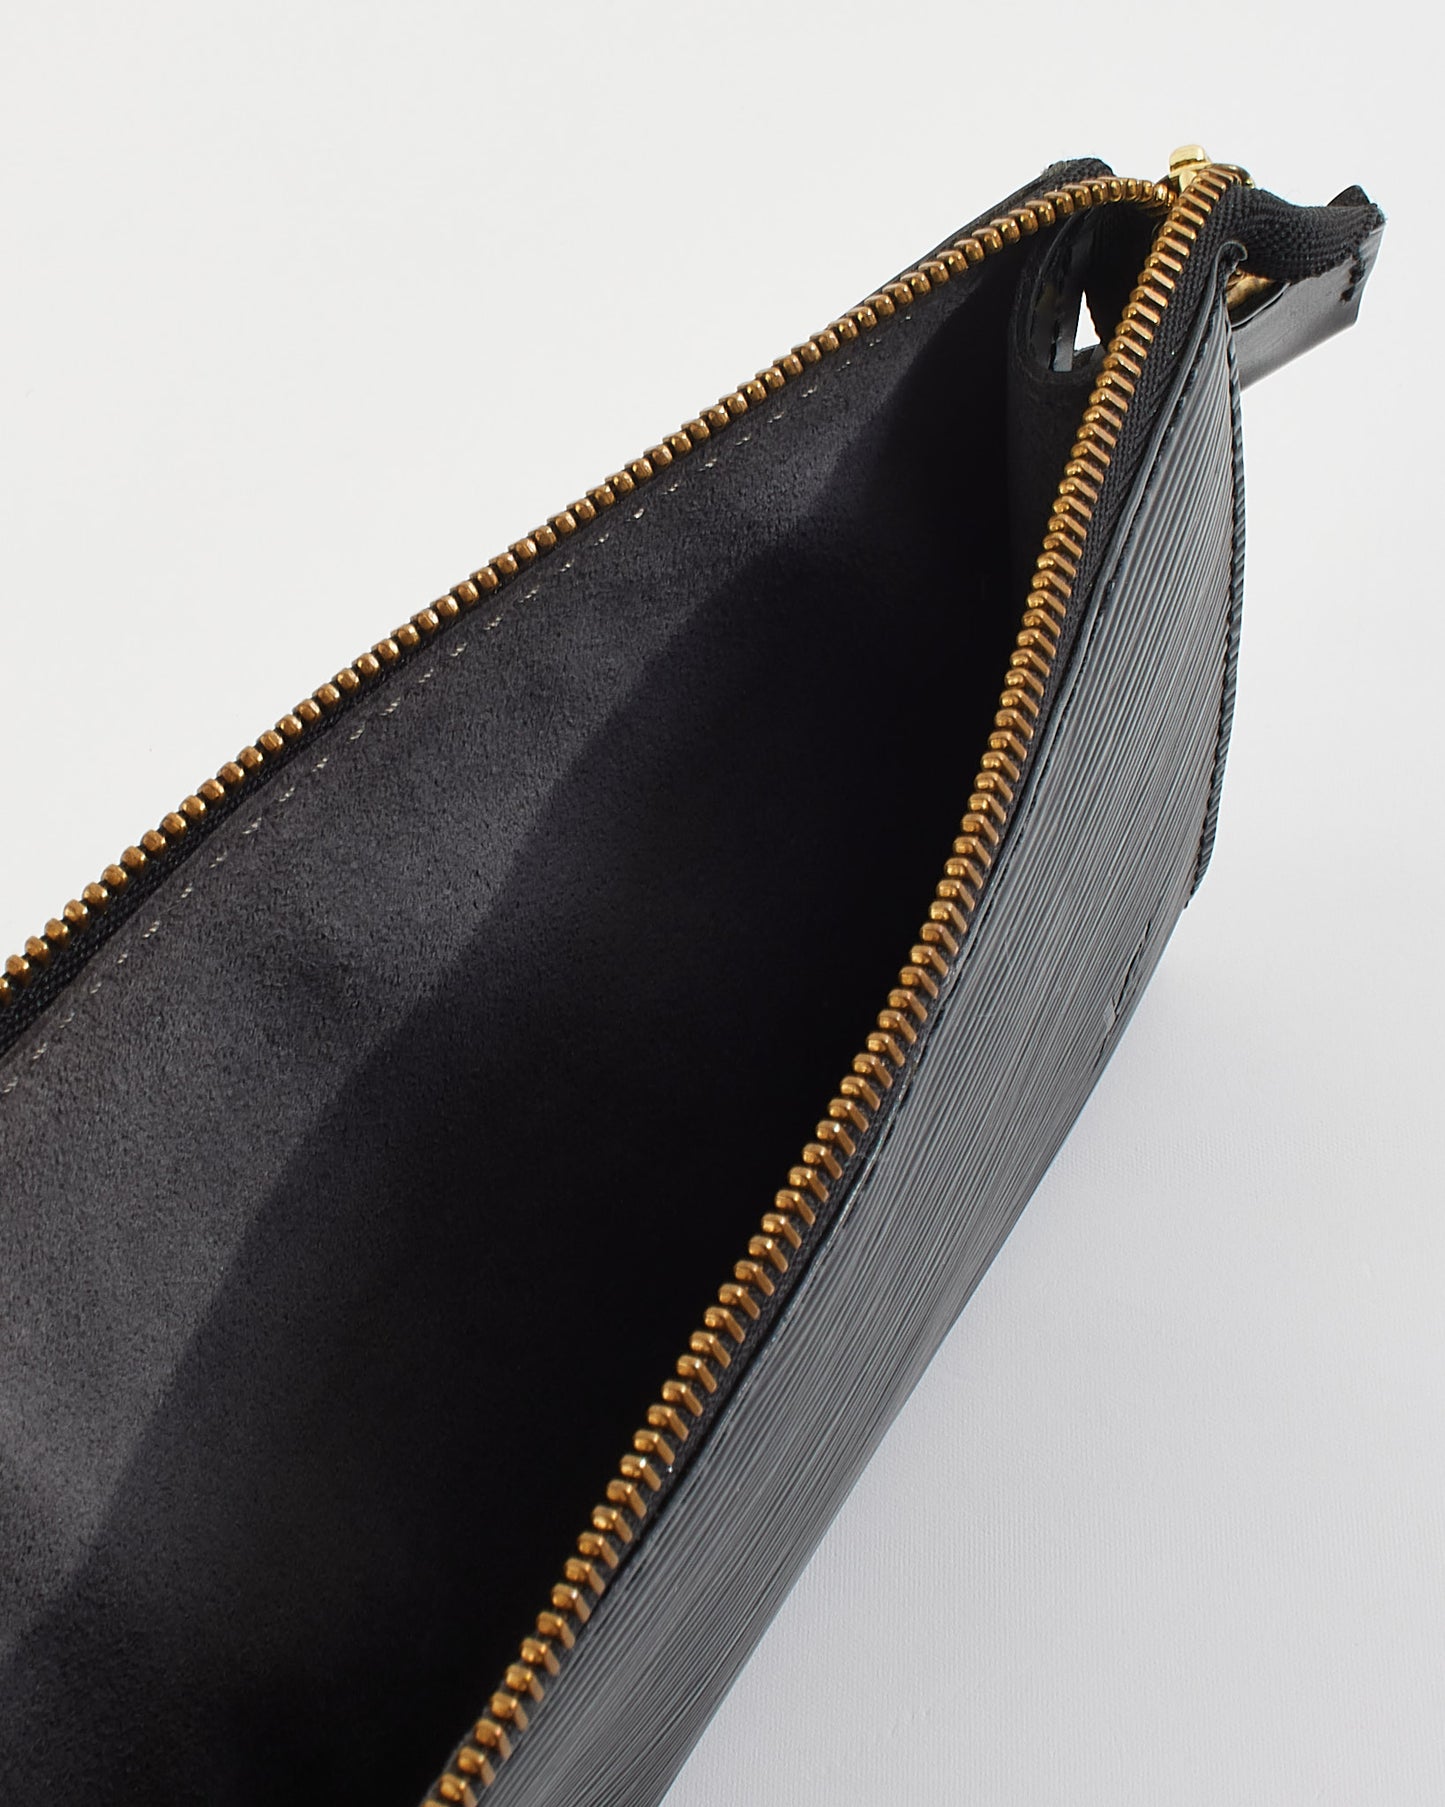 Louis Vuitton Black Epi Leather Pochette Shoulder Bag